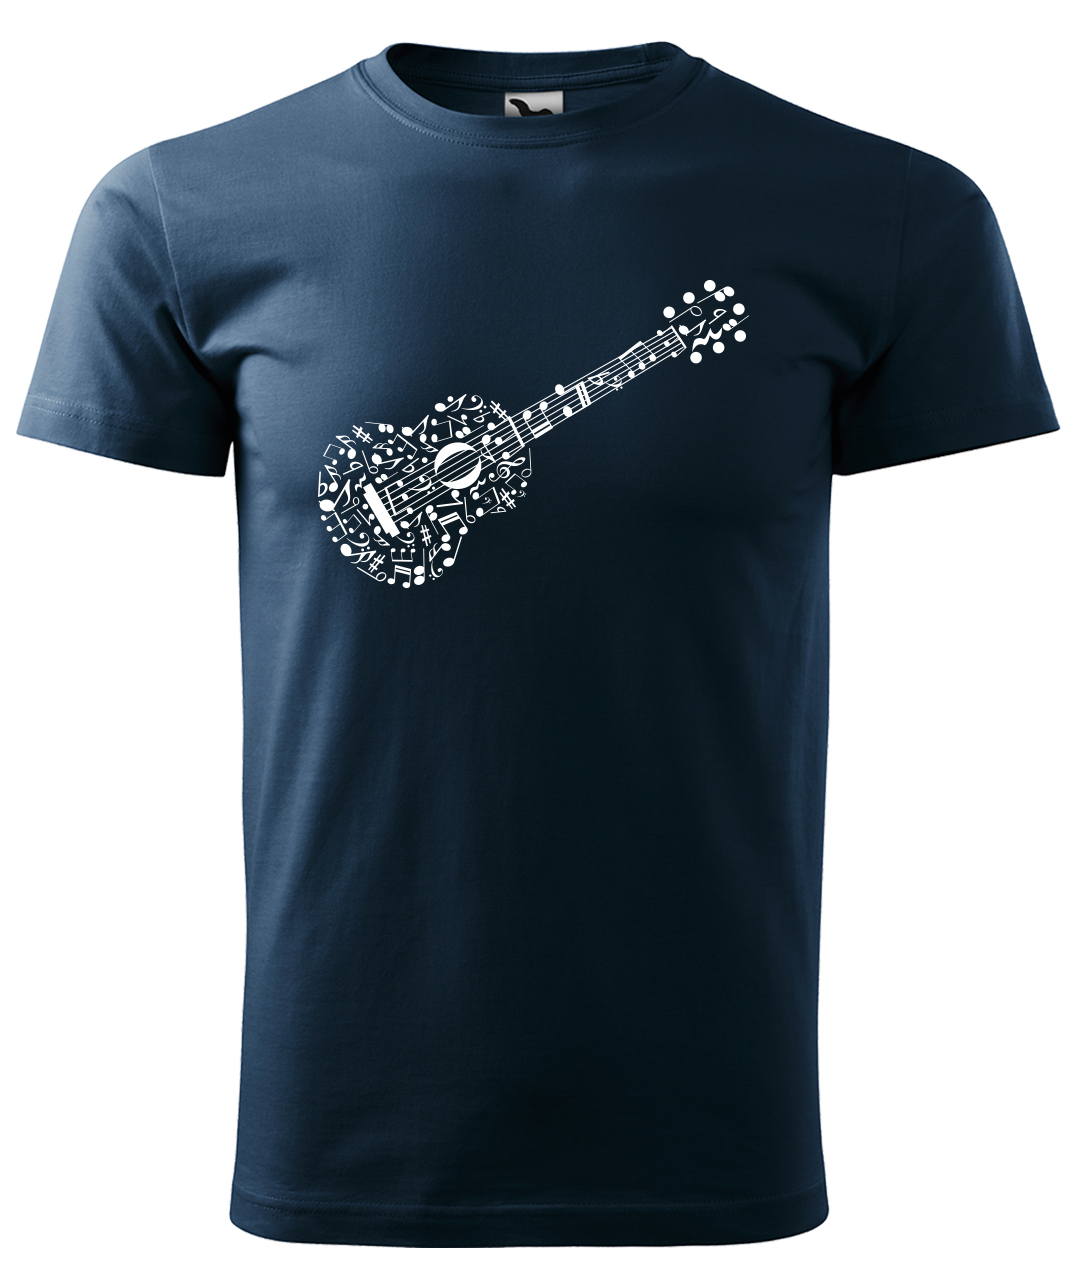 Dětské tričko s kytarou - Kytara z not Velikost: 12 let / 158 cm, Barva: Námořní modrá (02), Délka rukávu: Krátký rukáv